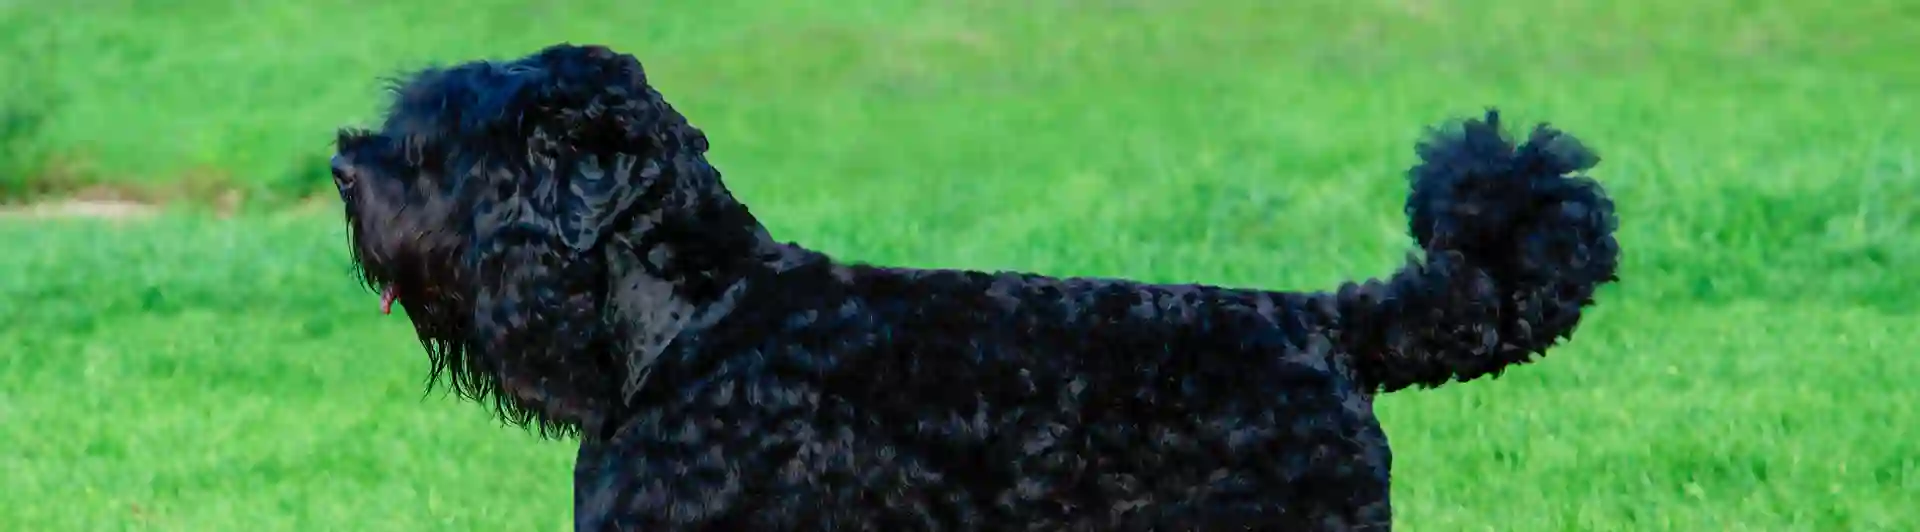 Rysk svart terrier uppställd på gräsmatta